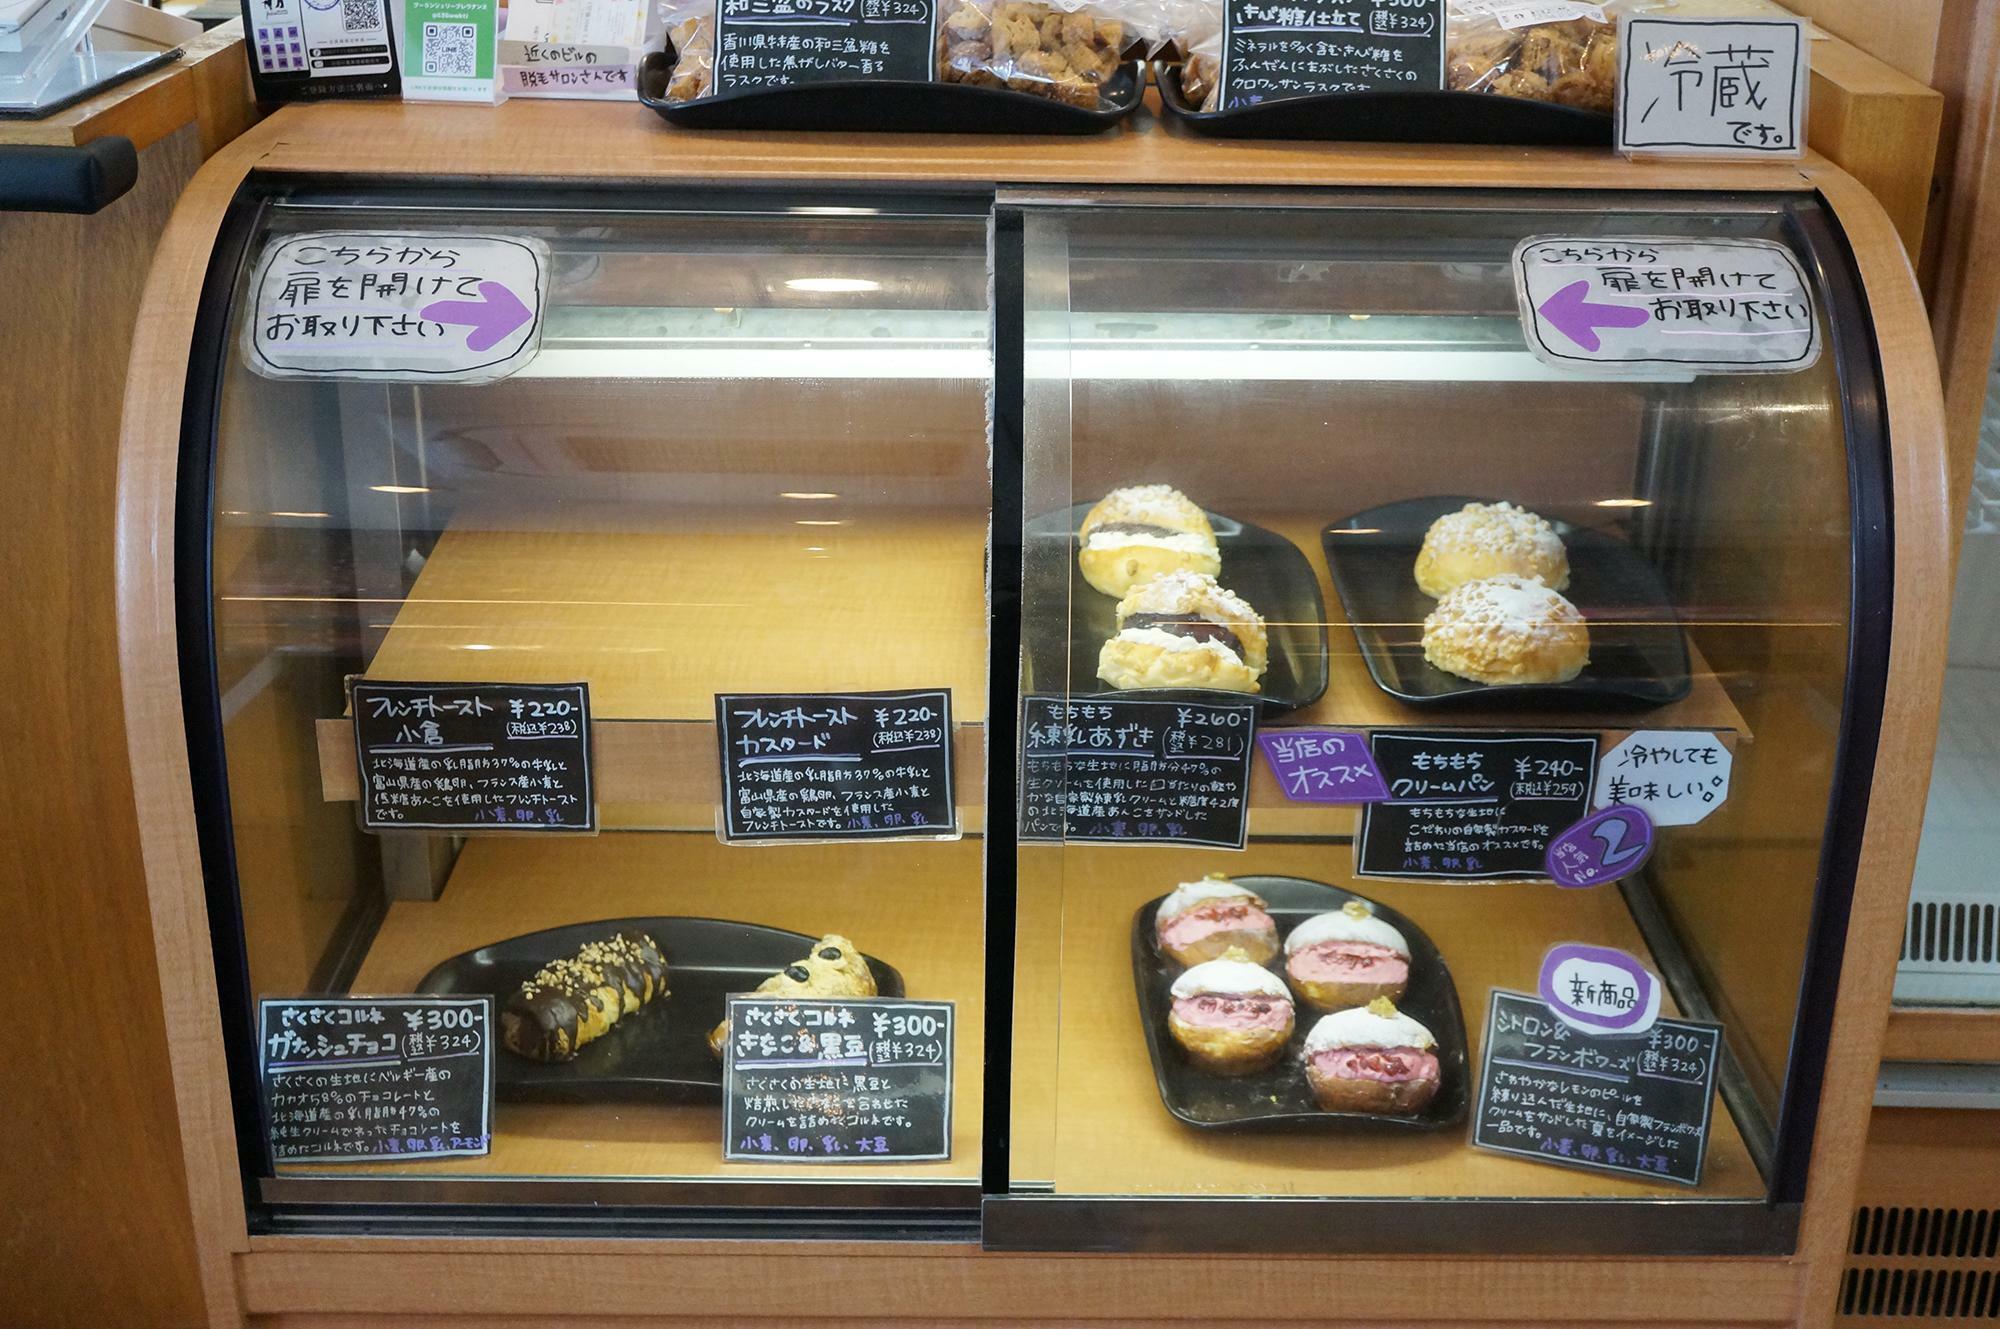 冷蔵コーナーはレジ横に設置されており、お店の人気メニューの1つ「もちもちクリームパン」もこちらのコーナーで販売されています。